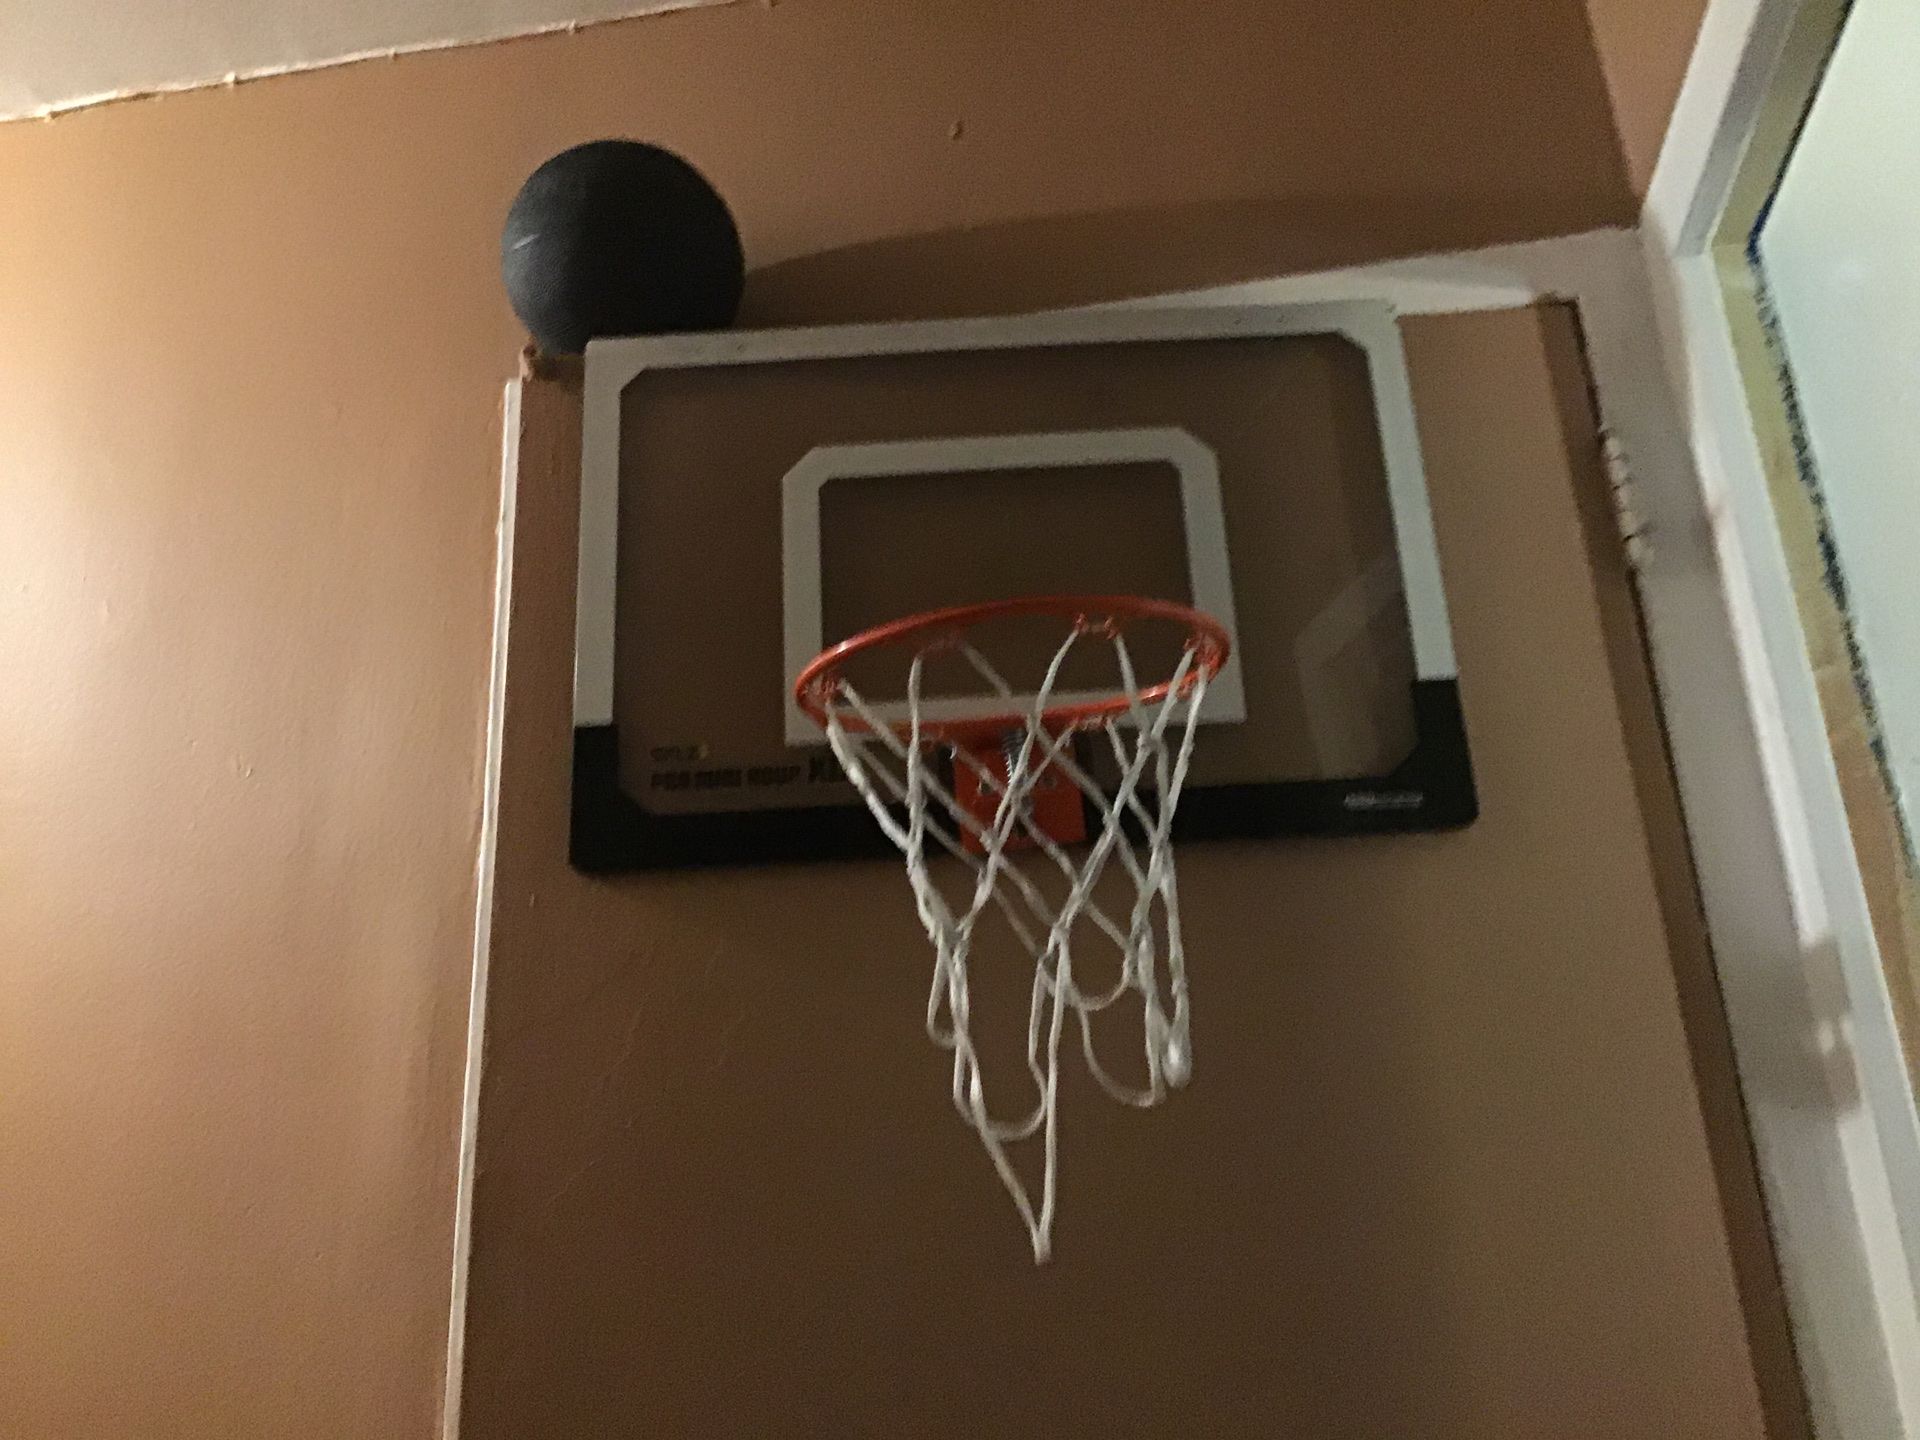 Basketball hoop comes with basketball price$30